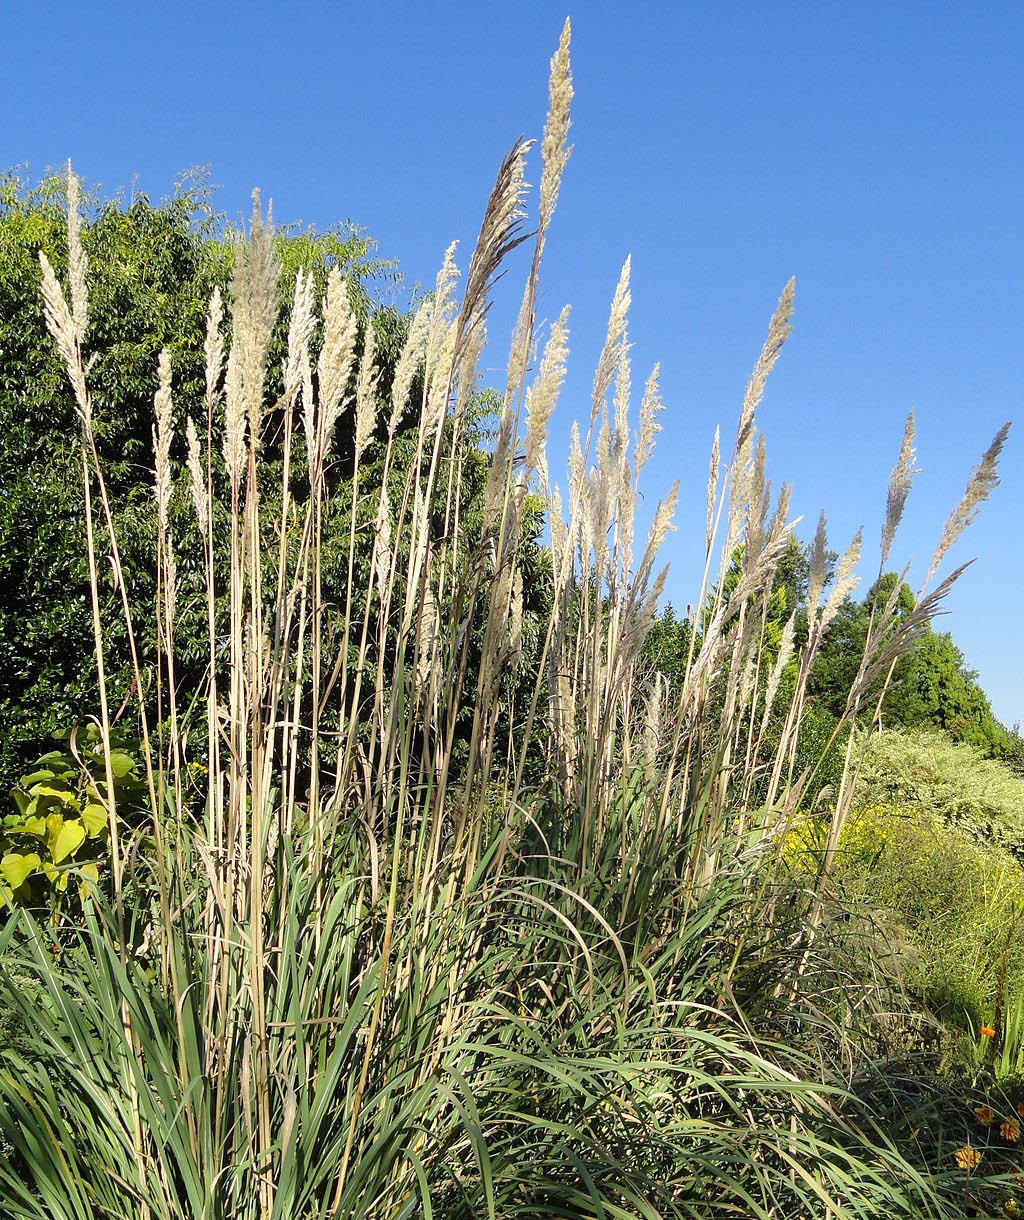 Ravenna grass